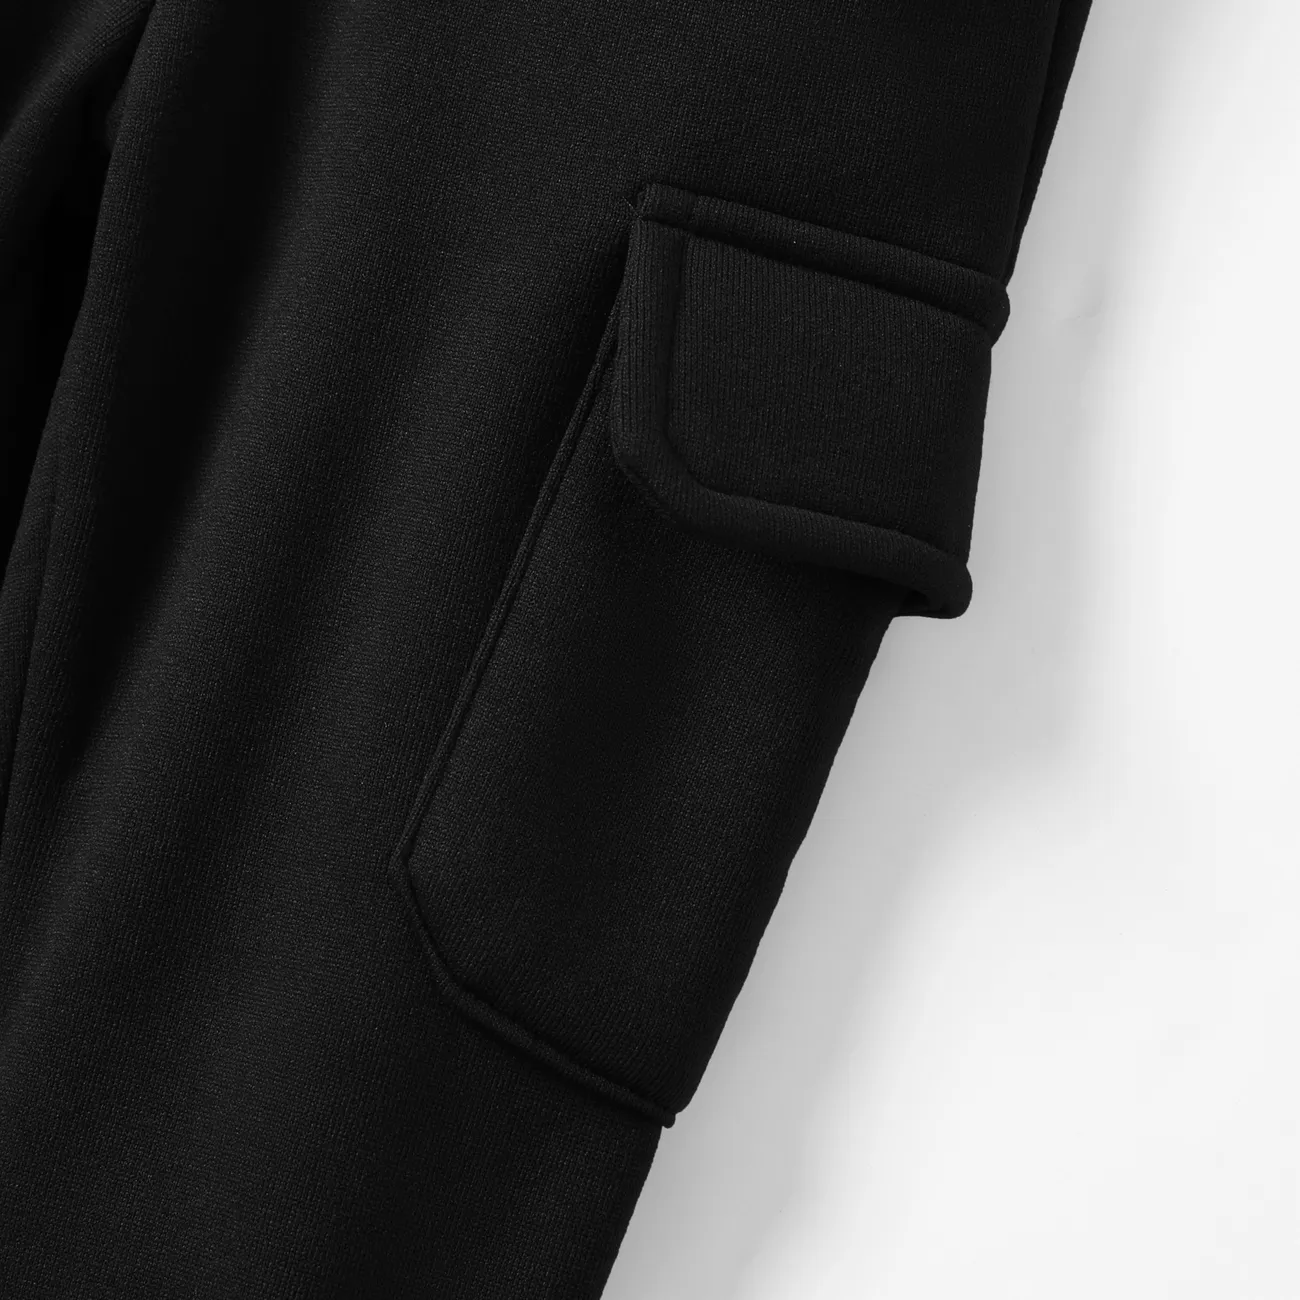 Pantalon décontracté ample pour garçon avec poche plaquée - 1pc, mélange de polyester et d’élasthanne, couleur unie Noir big image 1